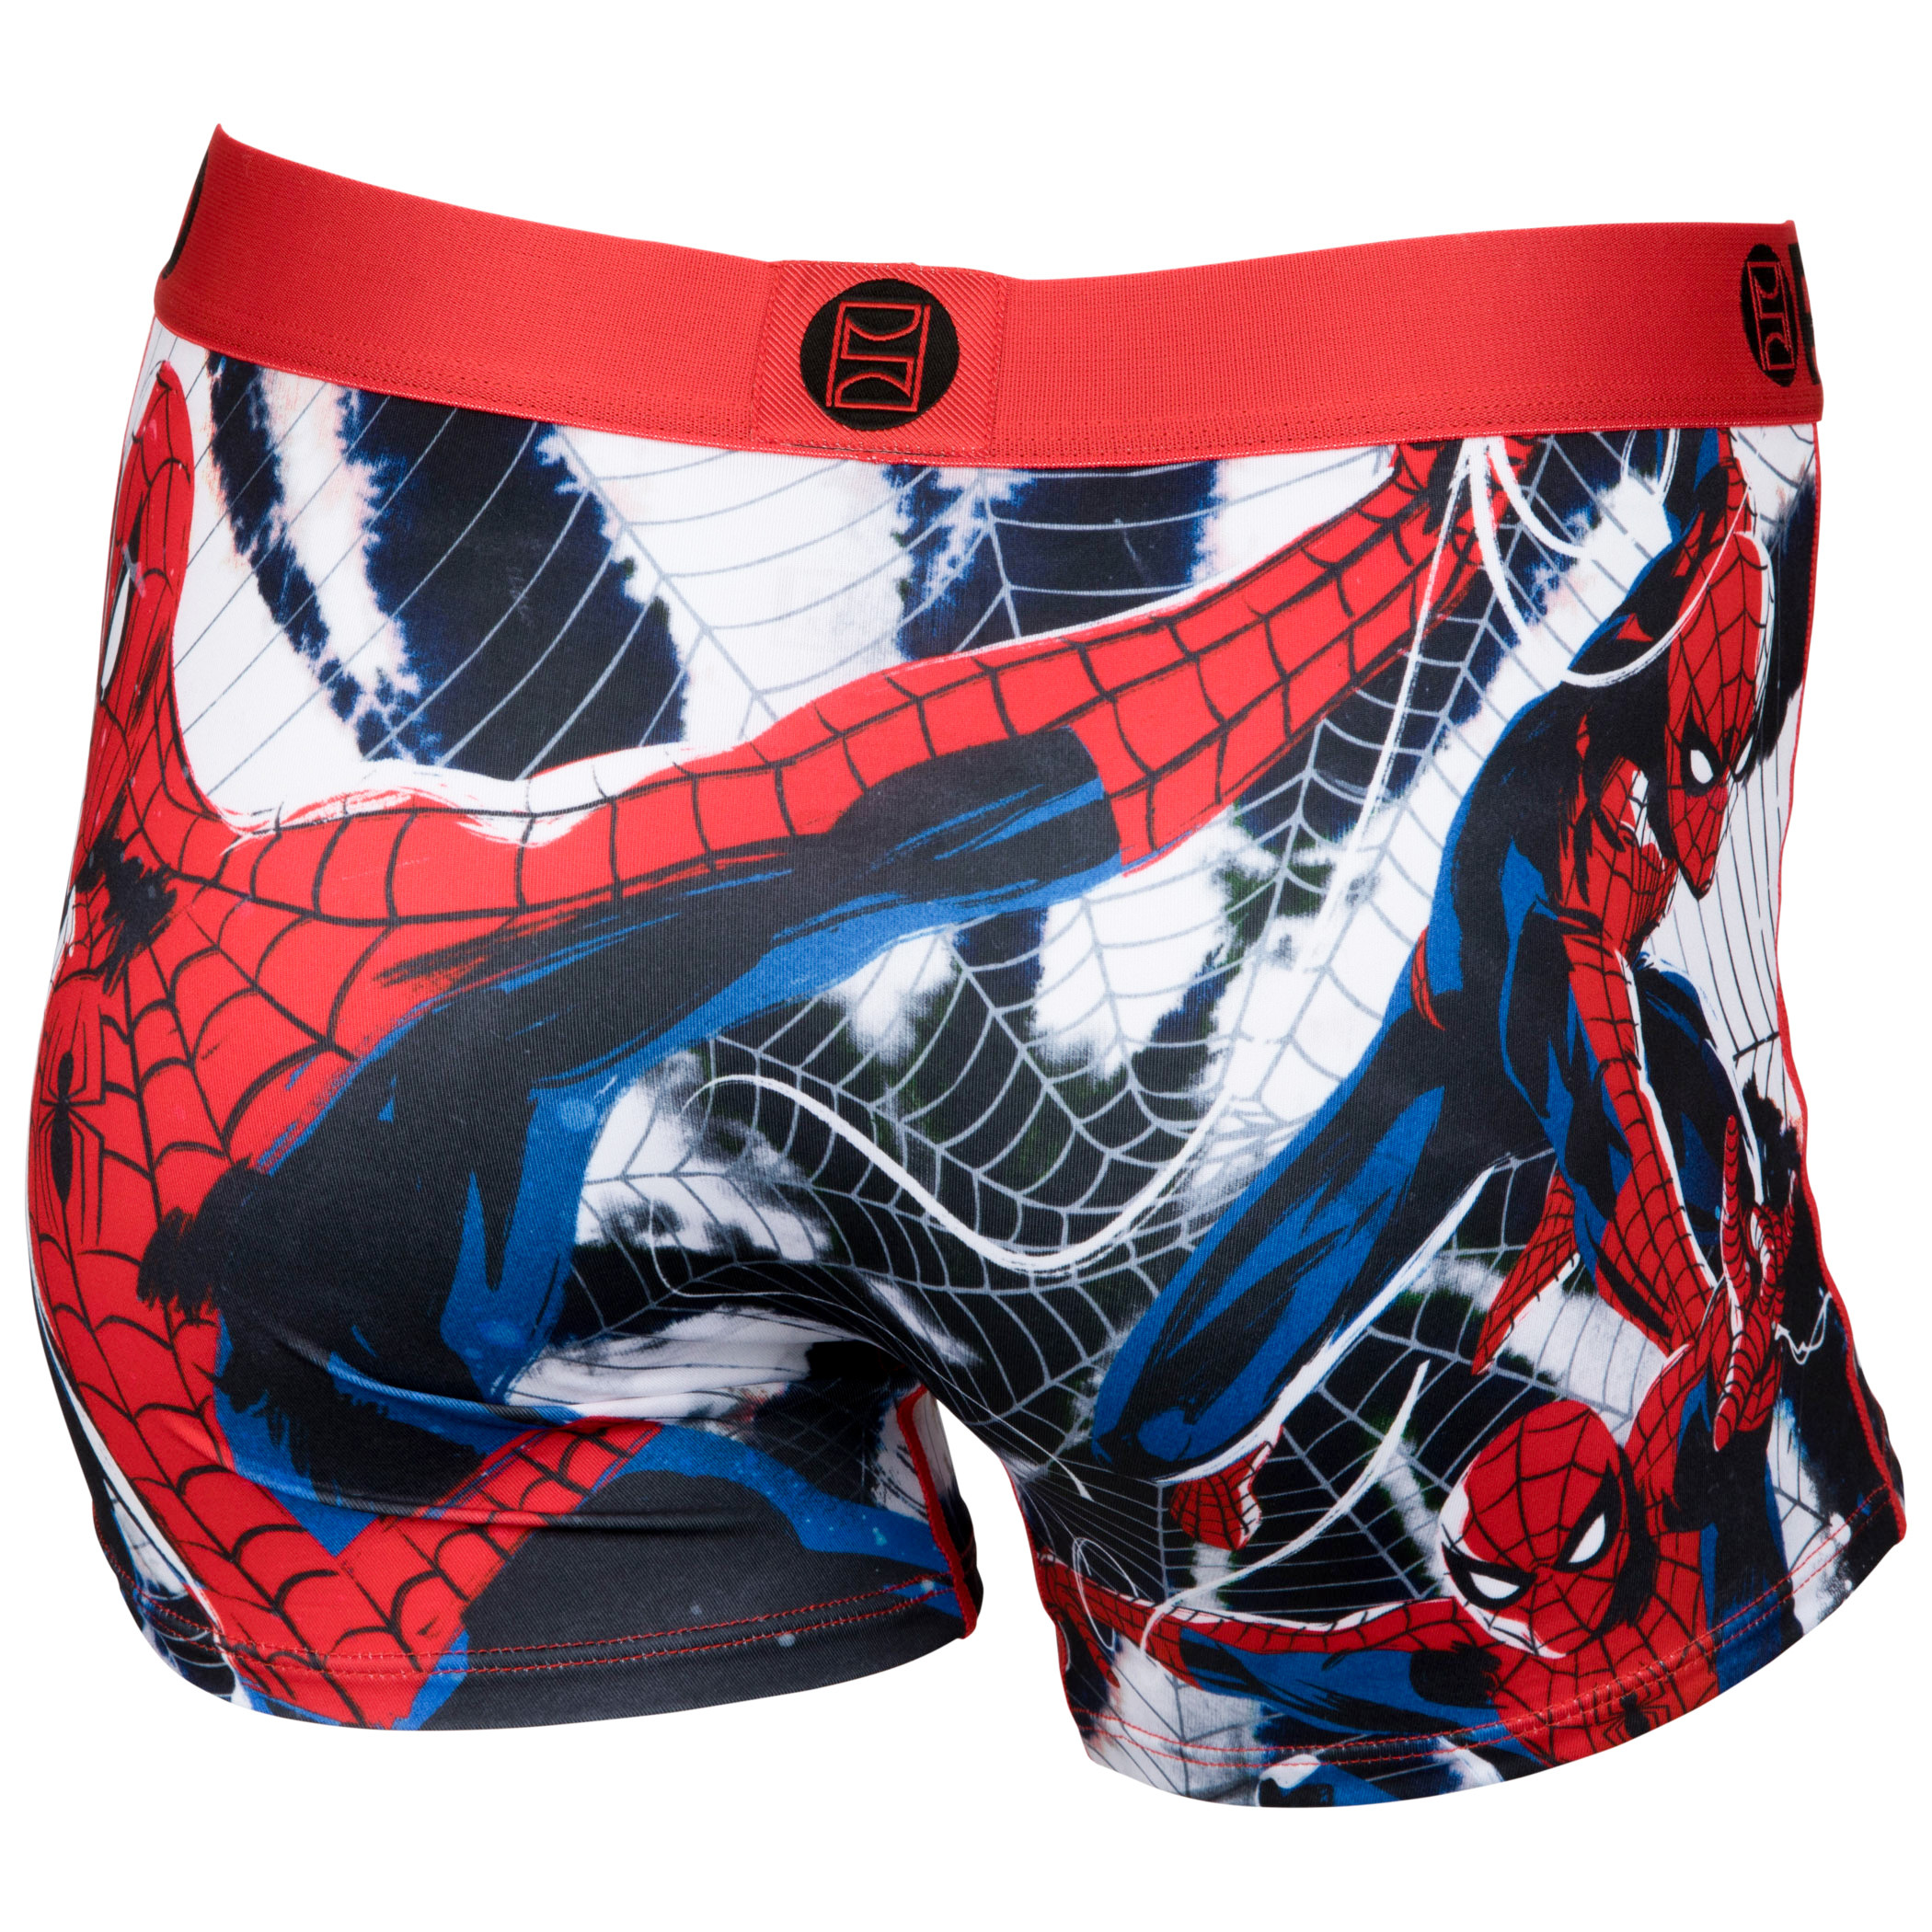 Spider-Man Radial Tie-Dye PSD Boy Shorts Underwear